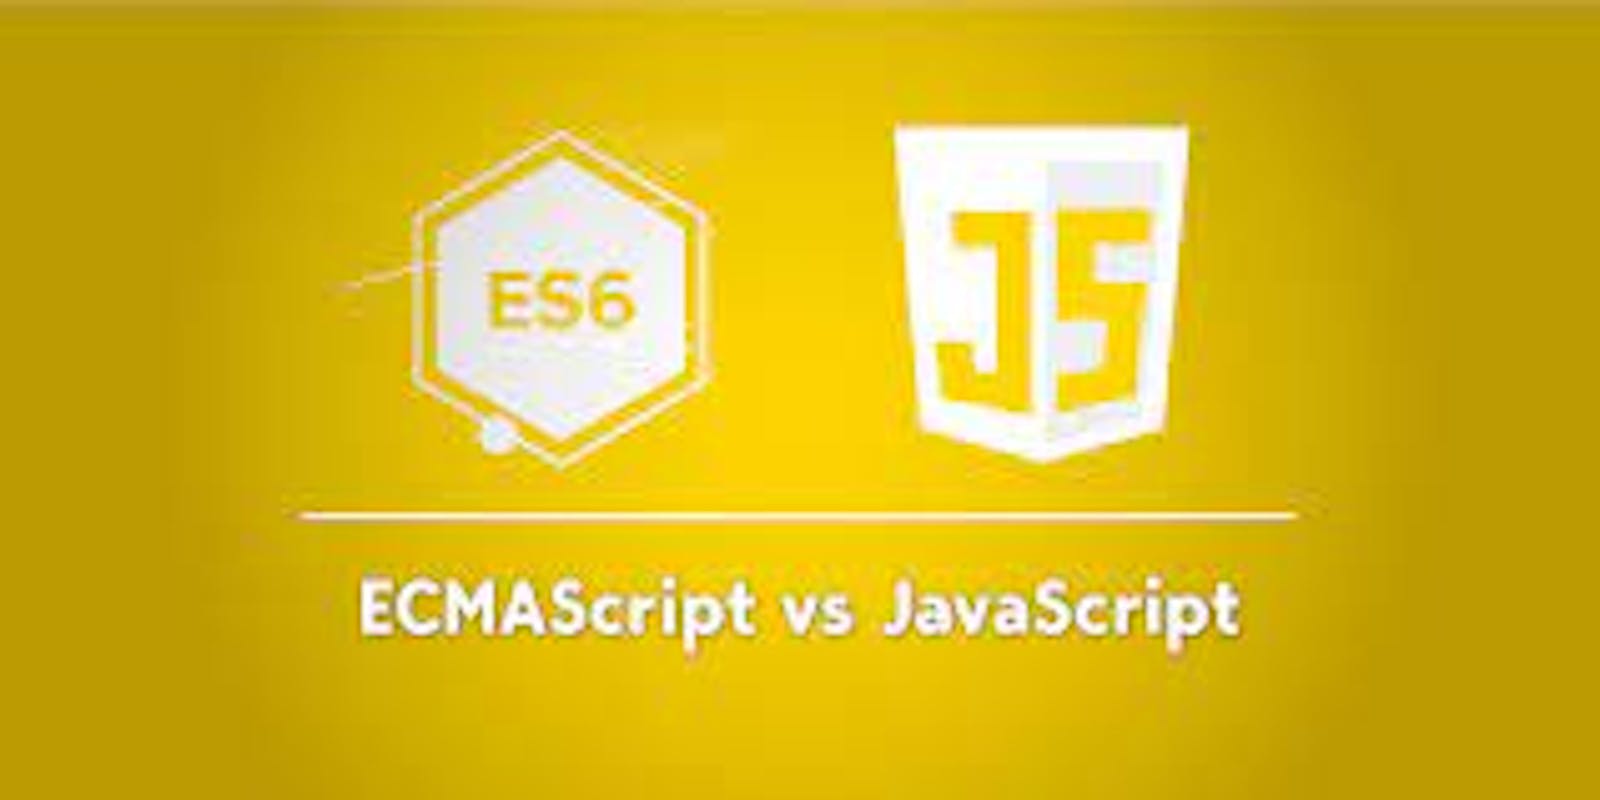 History of JavaScript and EcmaScript.